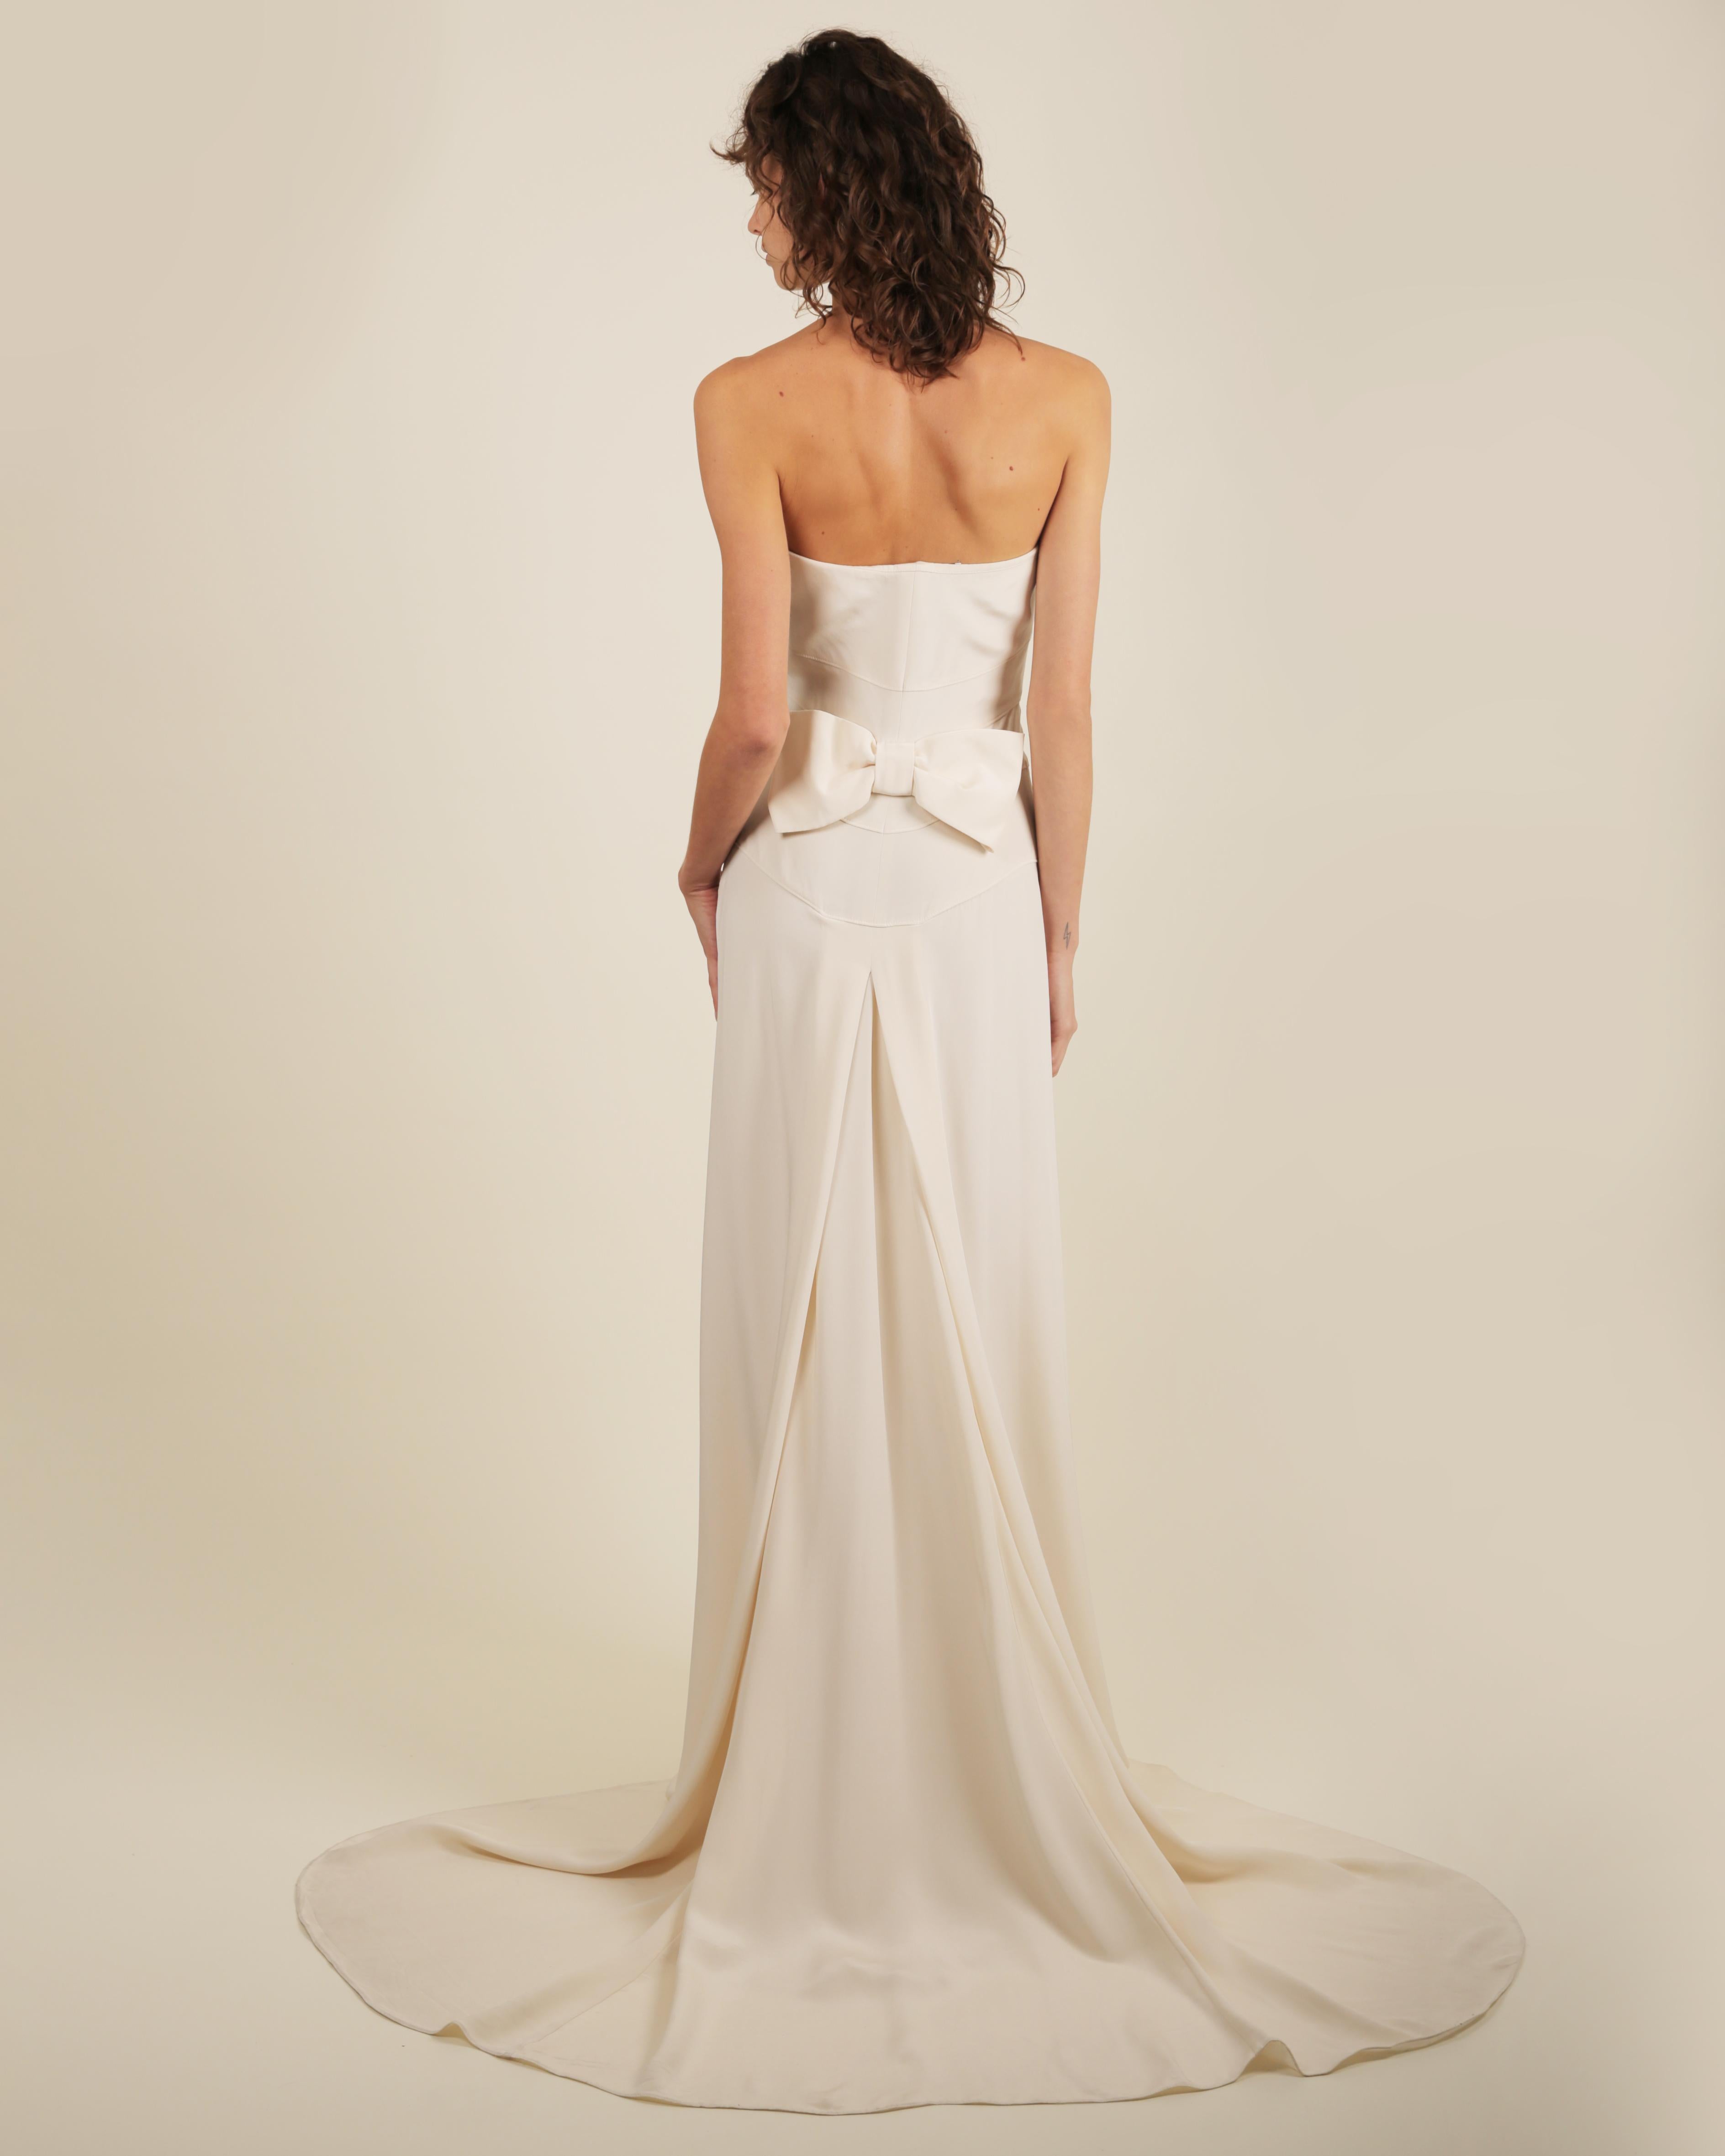 LOVE LALI Vintage By

Ein wunderschönes minimalistisches Hochzeitskleid von Valentino, schlicht und elegant.
Elfenbeinfarbenes trägerloses Kleid aus Seide mit leichtem Stretchanteil
Schmiegt sich an den Körper und die Hüften und geht dann in einen